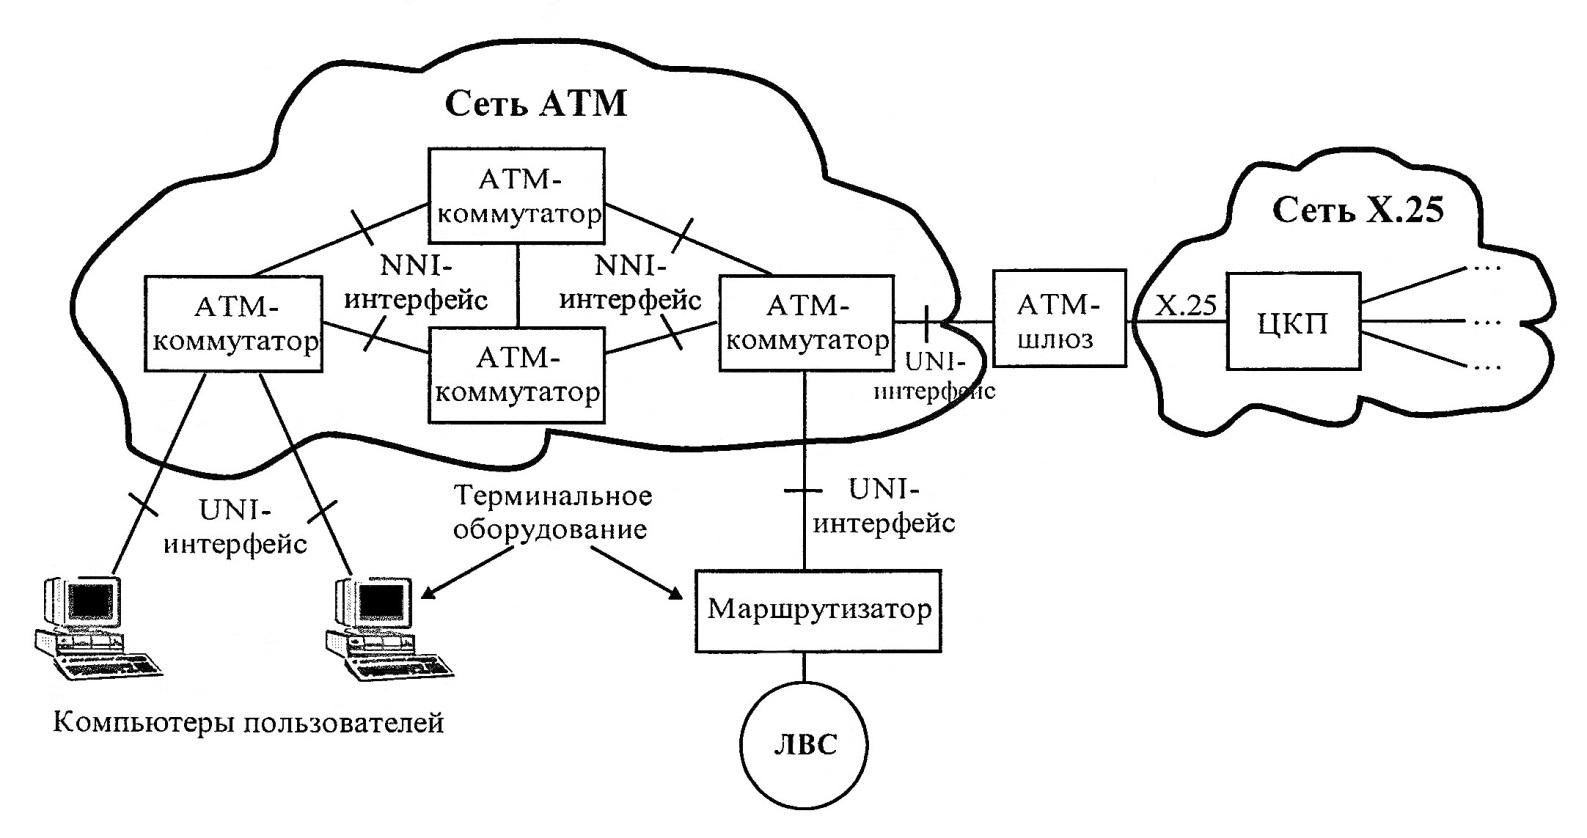 Извинить сеть. ATM технология передачи данных. Структура сети ATM. Стандарты технологии ATM. Схема мультиплексирования сети ATM.